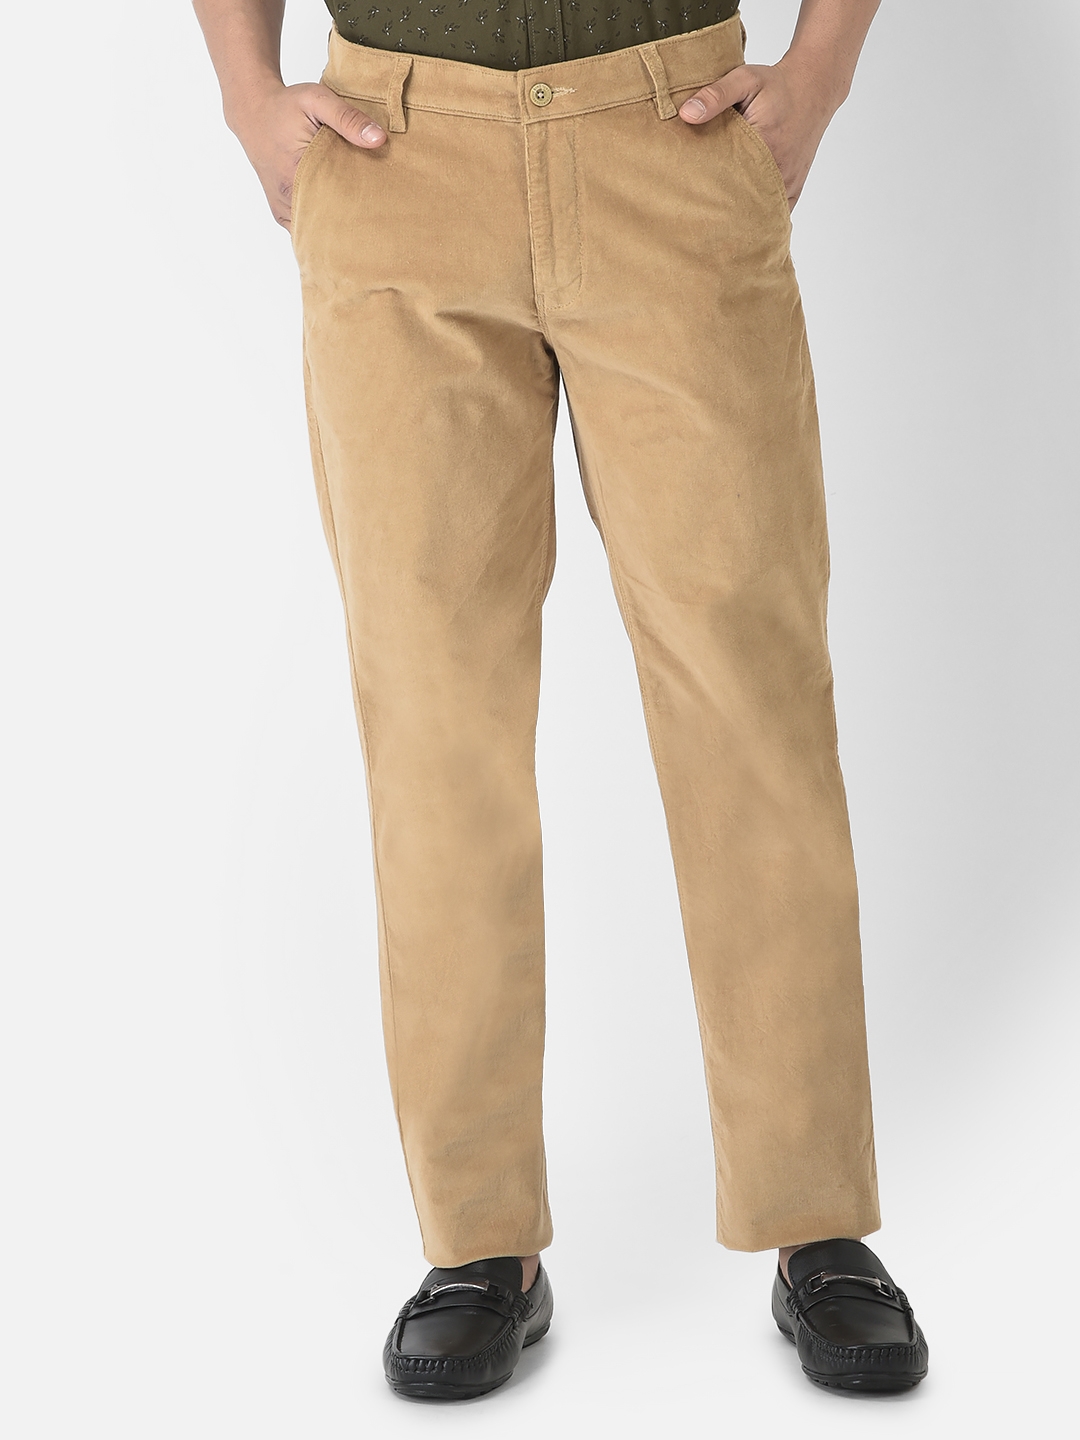 Khaki Slim Fit Formal Trousers For Men | JadeBlue